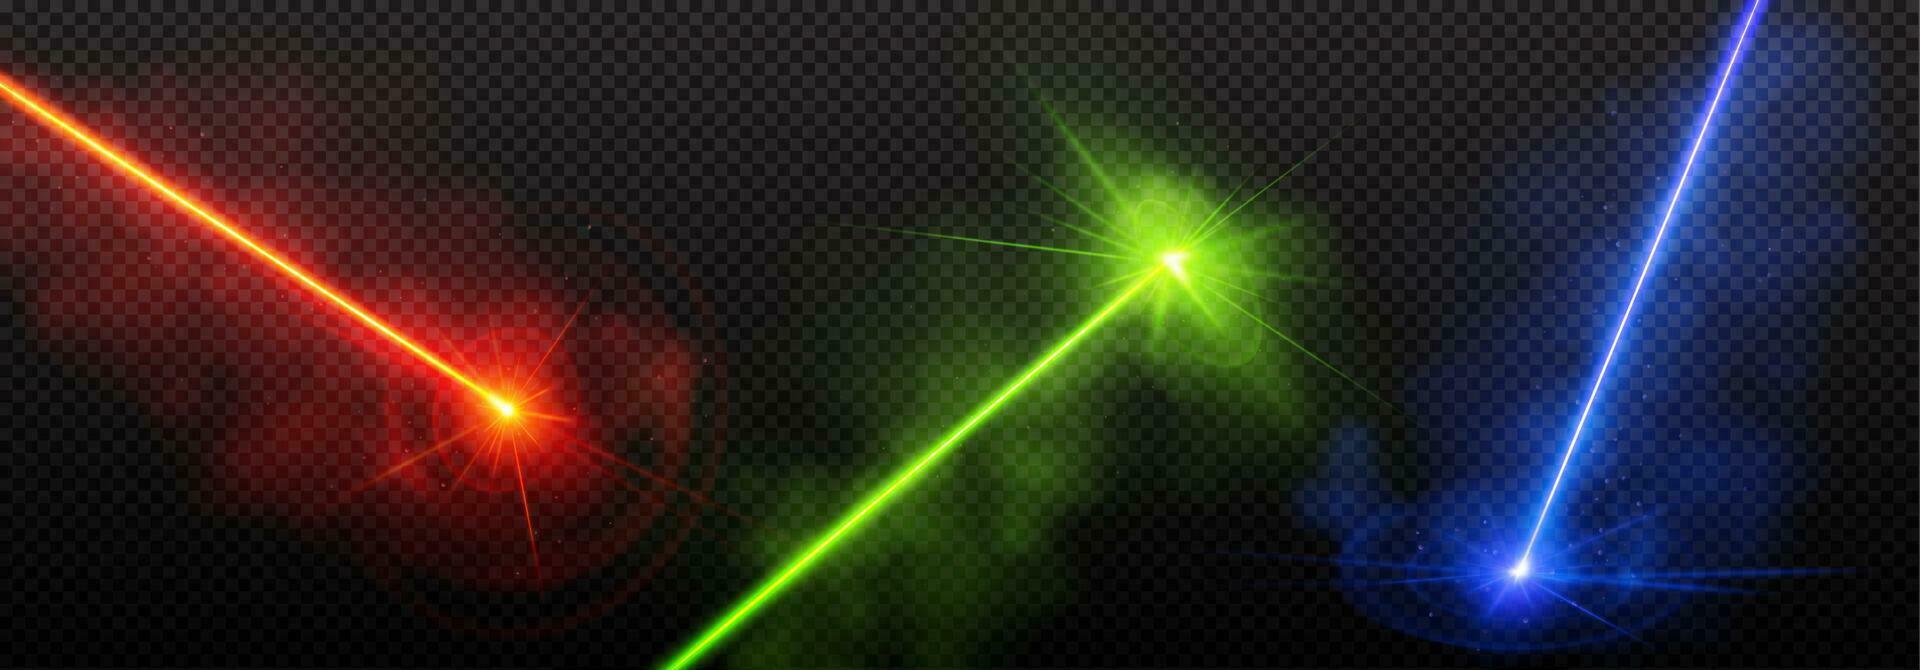 Realistic set of laser lights on transparent vector